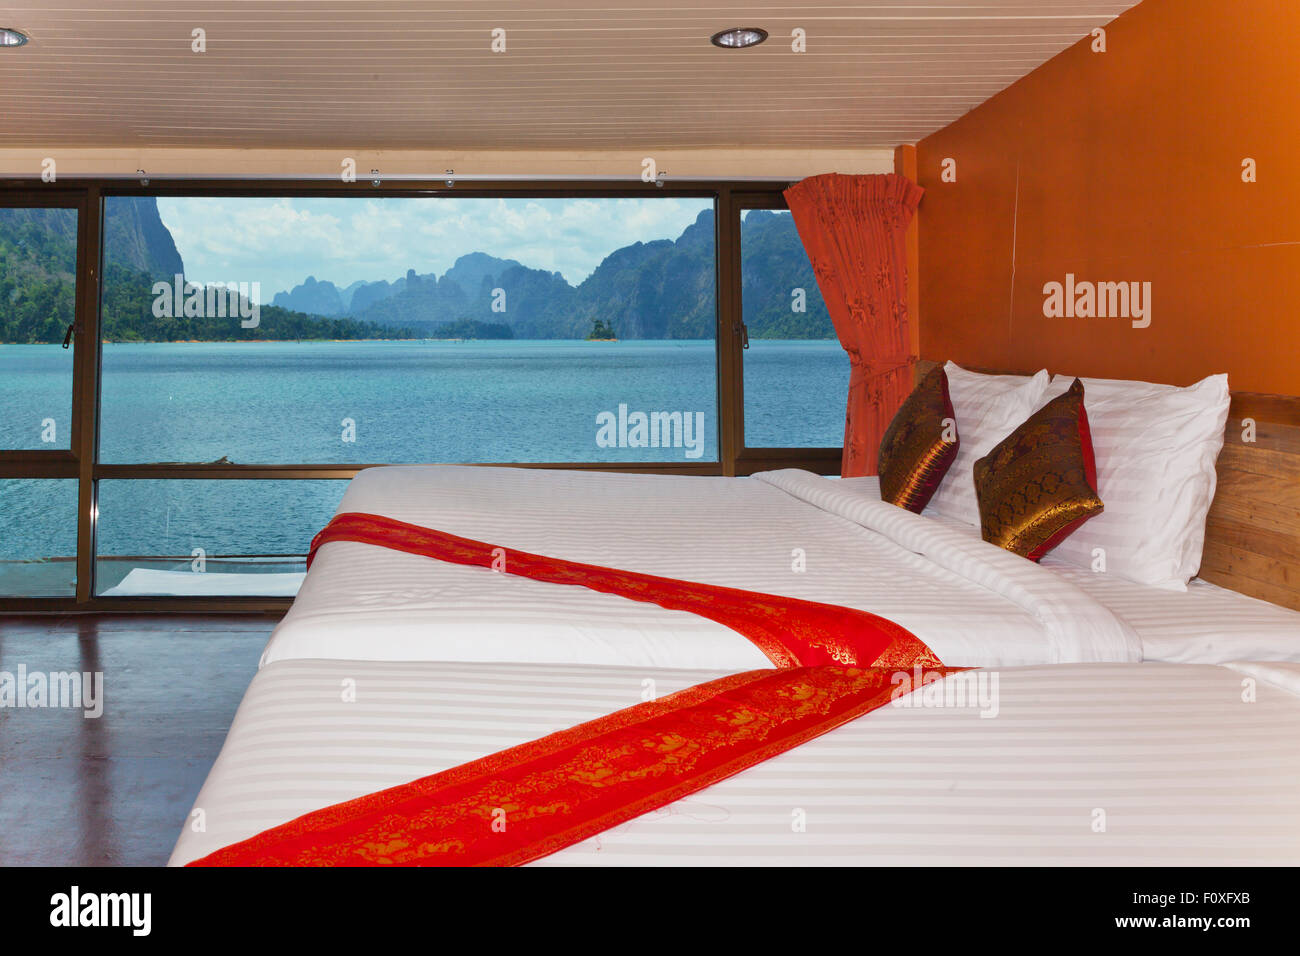 Dormitorio en balsa PANVAREE House que ofrece alojamientos de gama alta en CHEOW EN lago en el Parque Nacional de Khao Sok - Tailandia Foto de stock